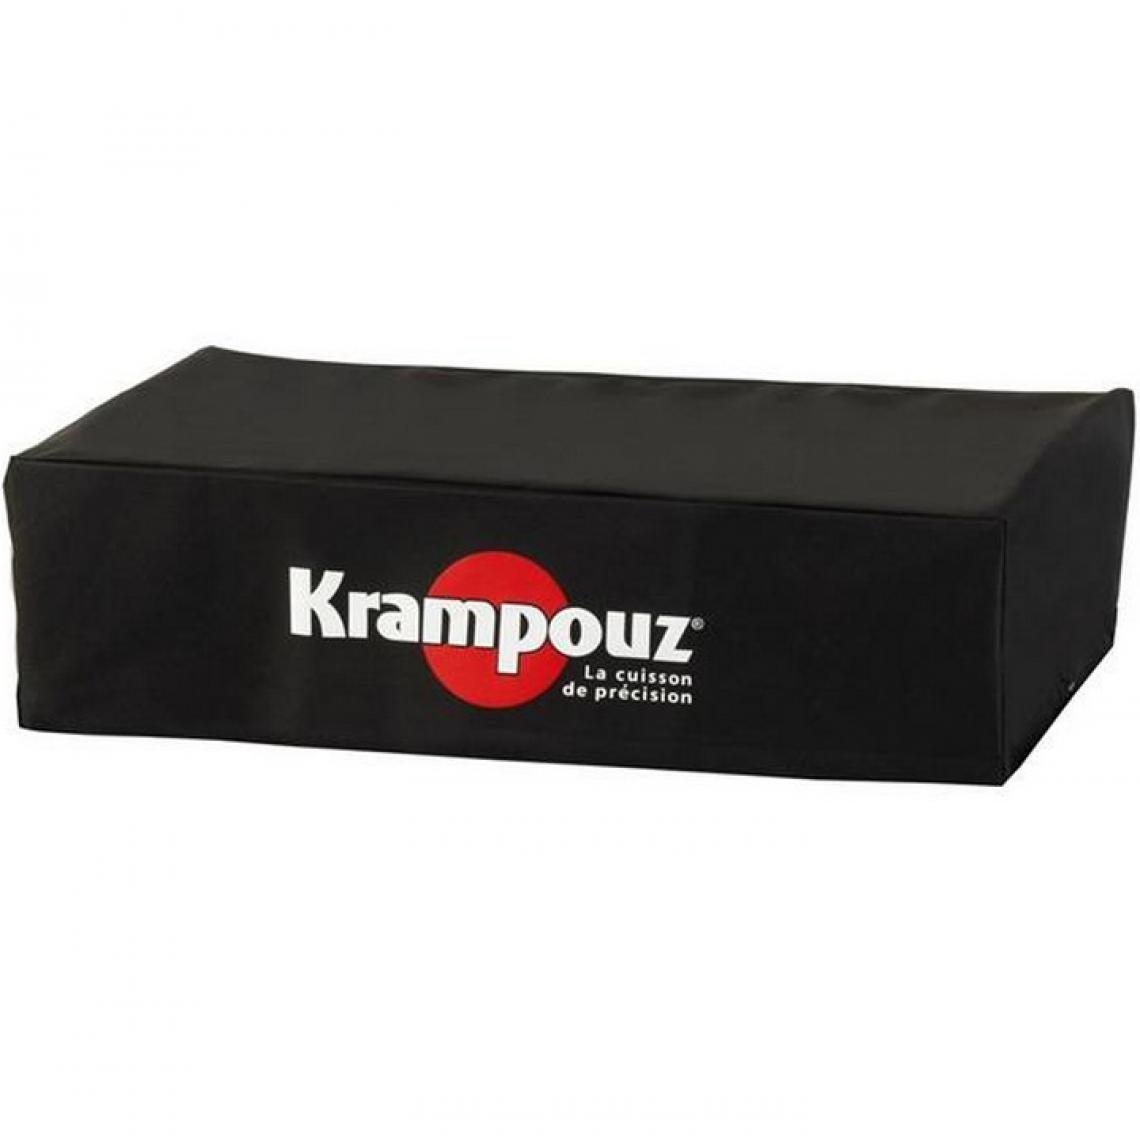 Krampouz - krampouz - ahp4 - Accessoires barbecue